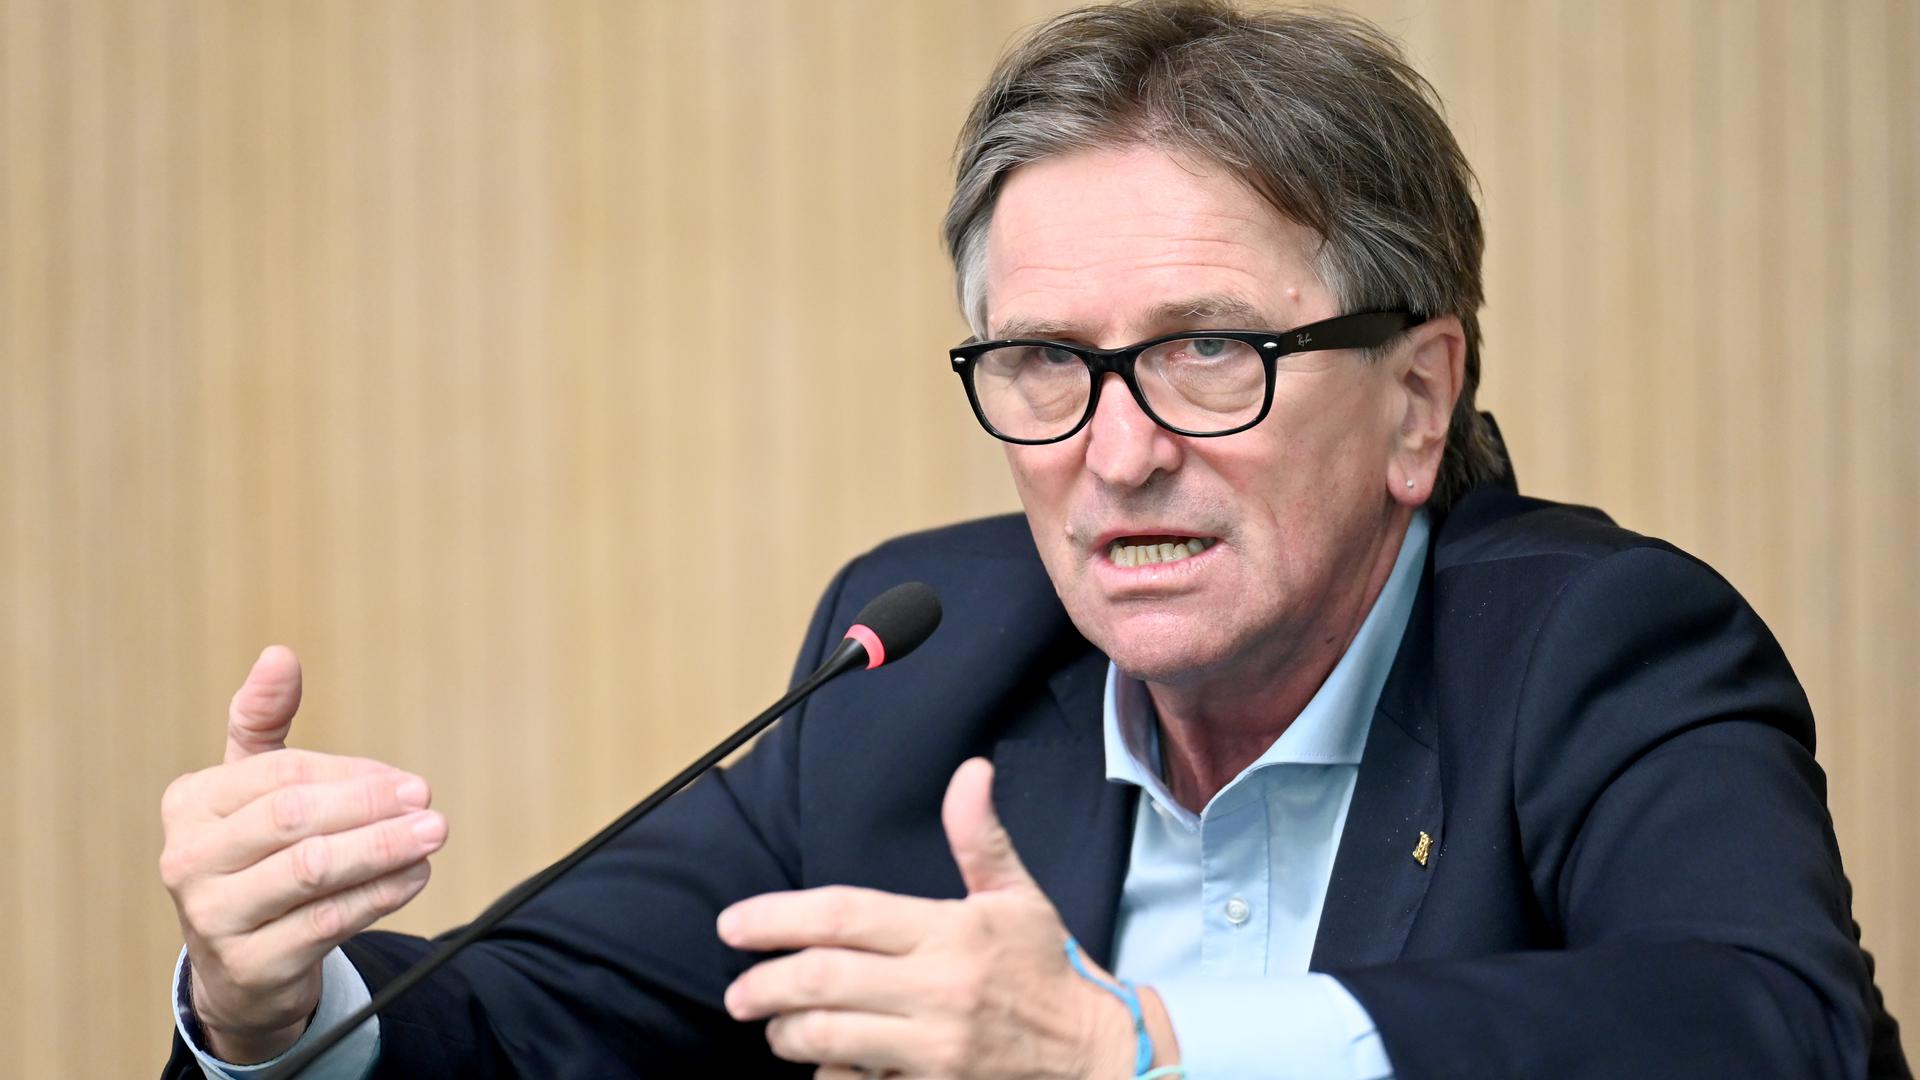 Manfred Lucha (Grüne), Minister für Soziales und Integration in Baden-Württemberg, spricht bei einer Regierungs-Pressekonferenz im Landtag zu Journalisten. (zu dpa "Gesundheitsminister kritisiert Rationierung von Biontech-Impfstoff") +++ dpa-Bildfunk +++